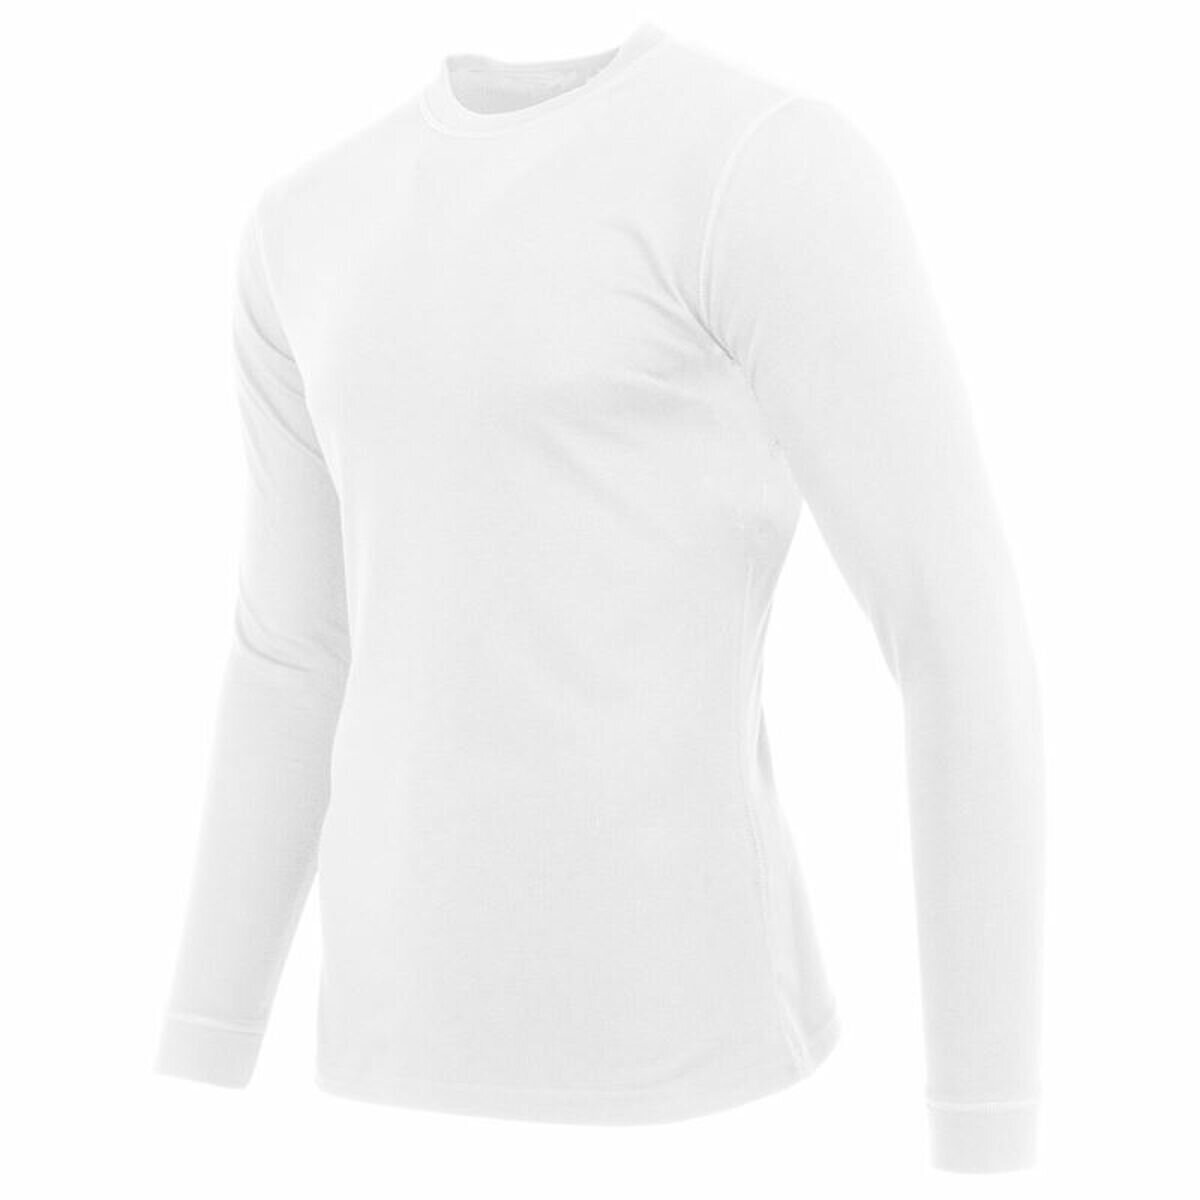 Men's White Thermal Joluvi T-shirt